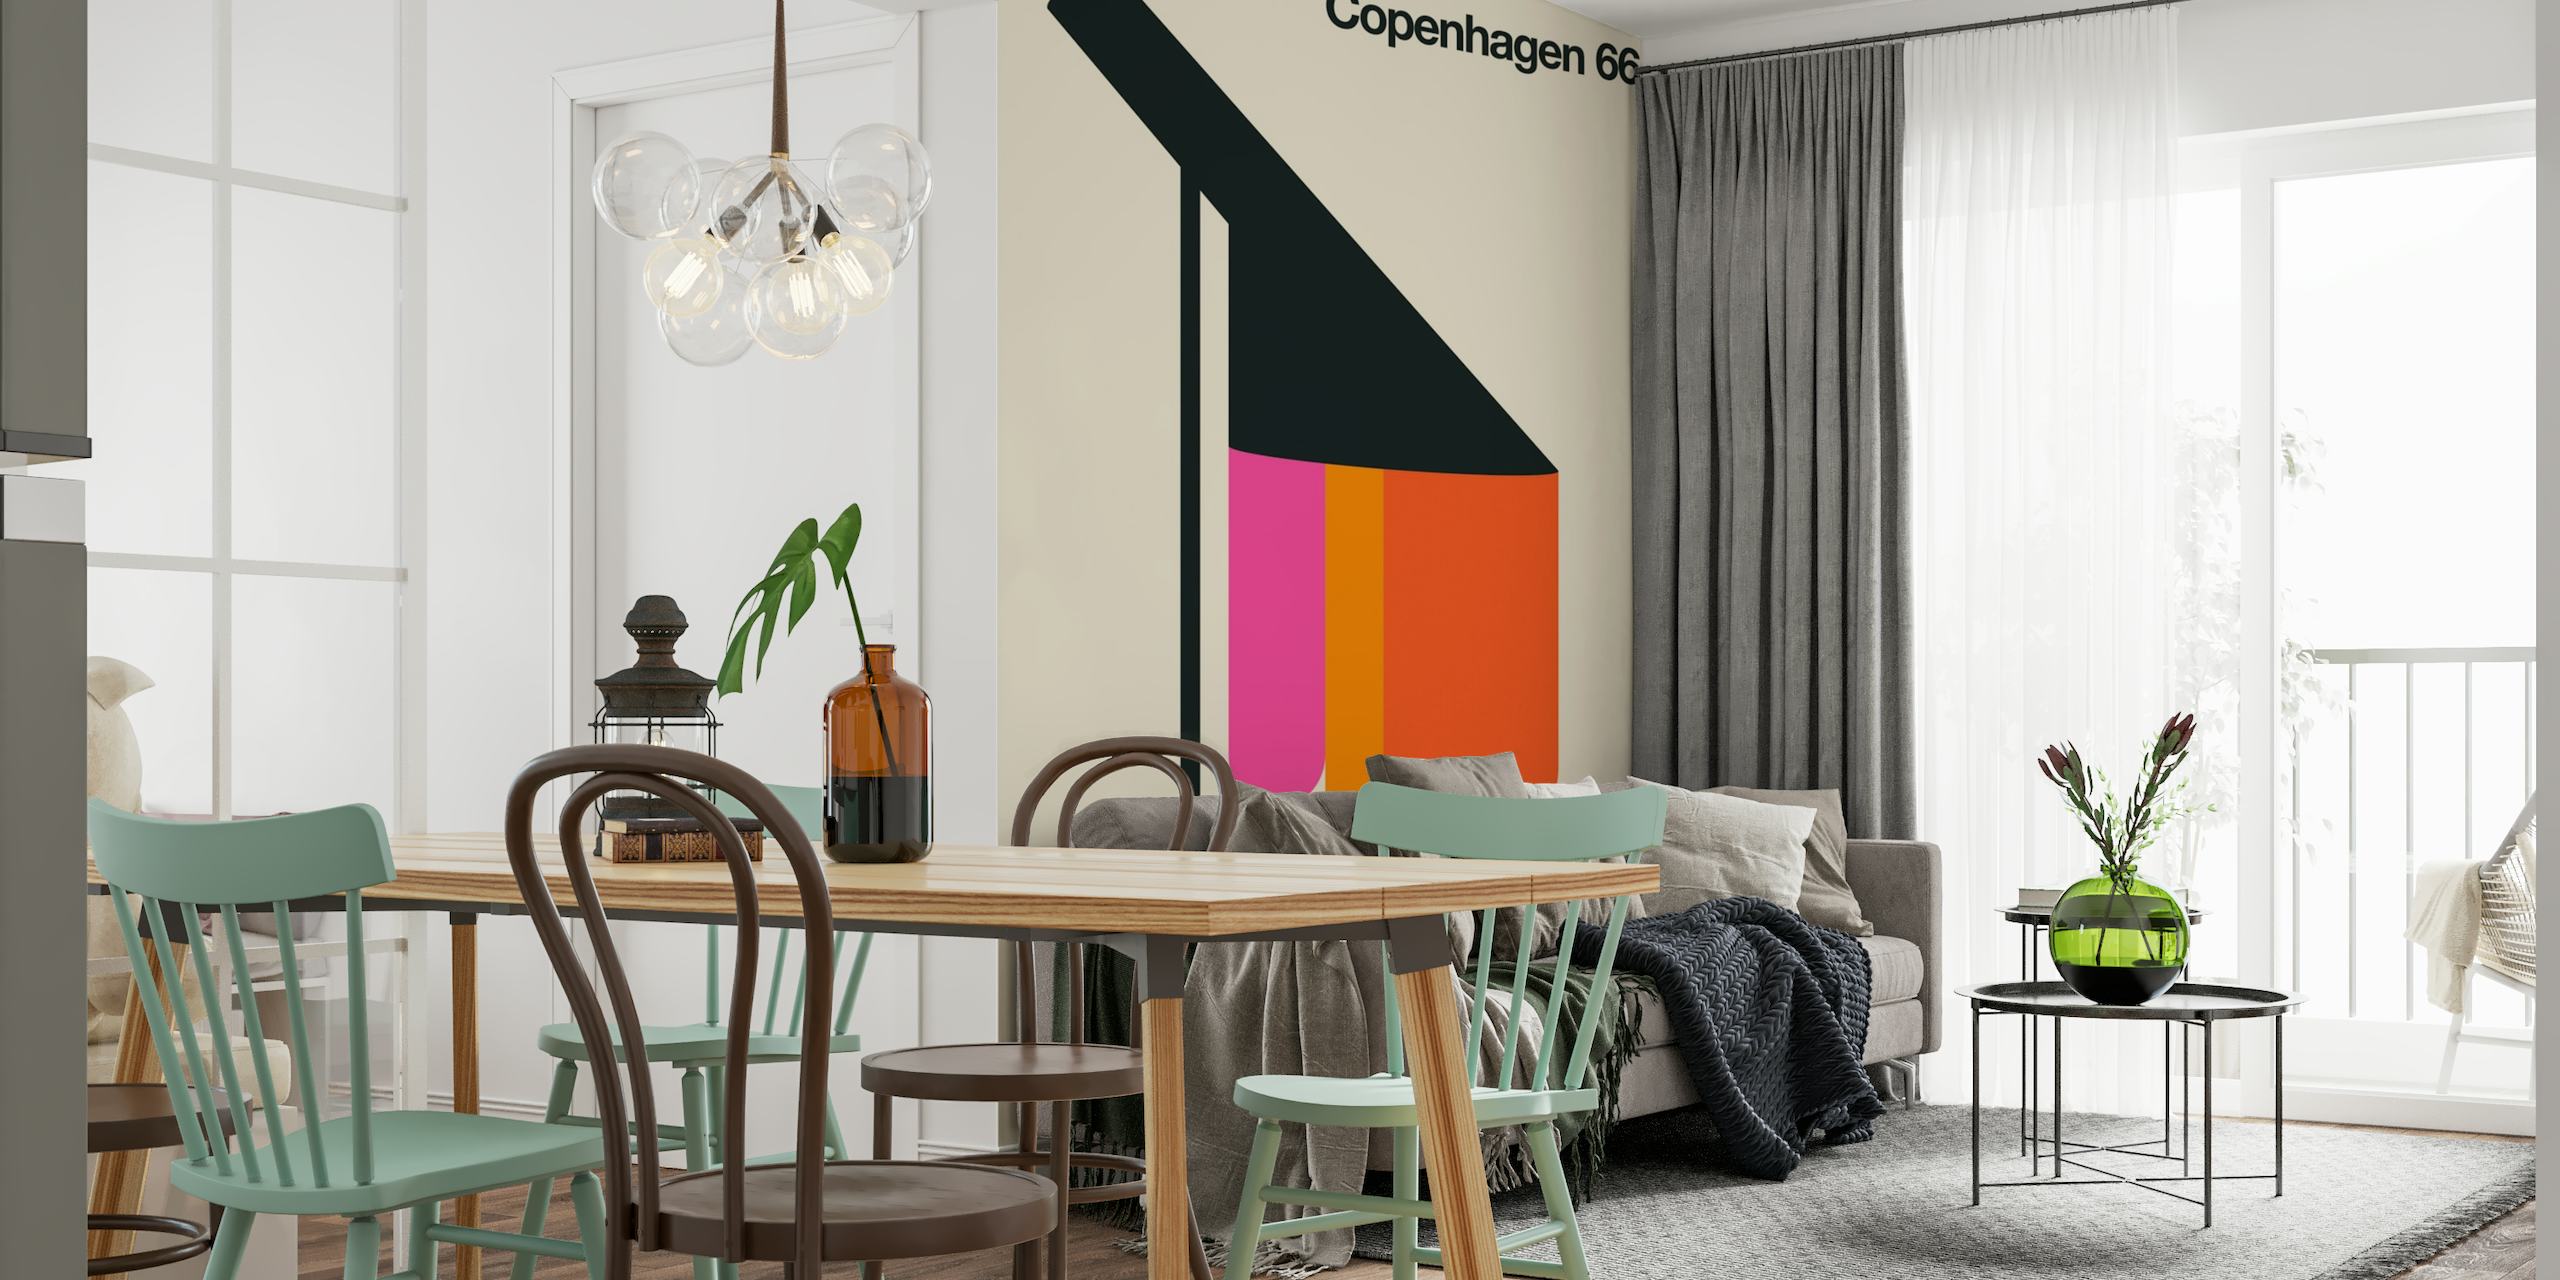 Copenhagen 66 wallpaper